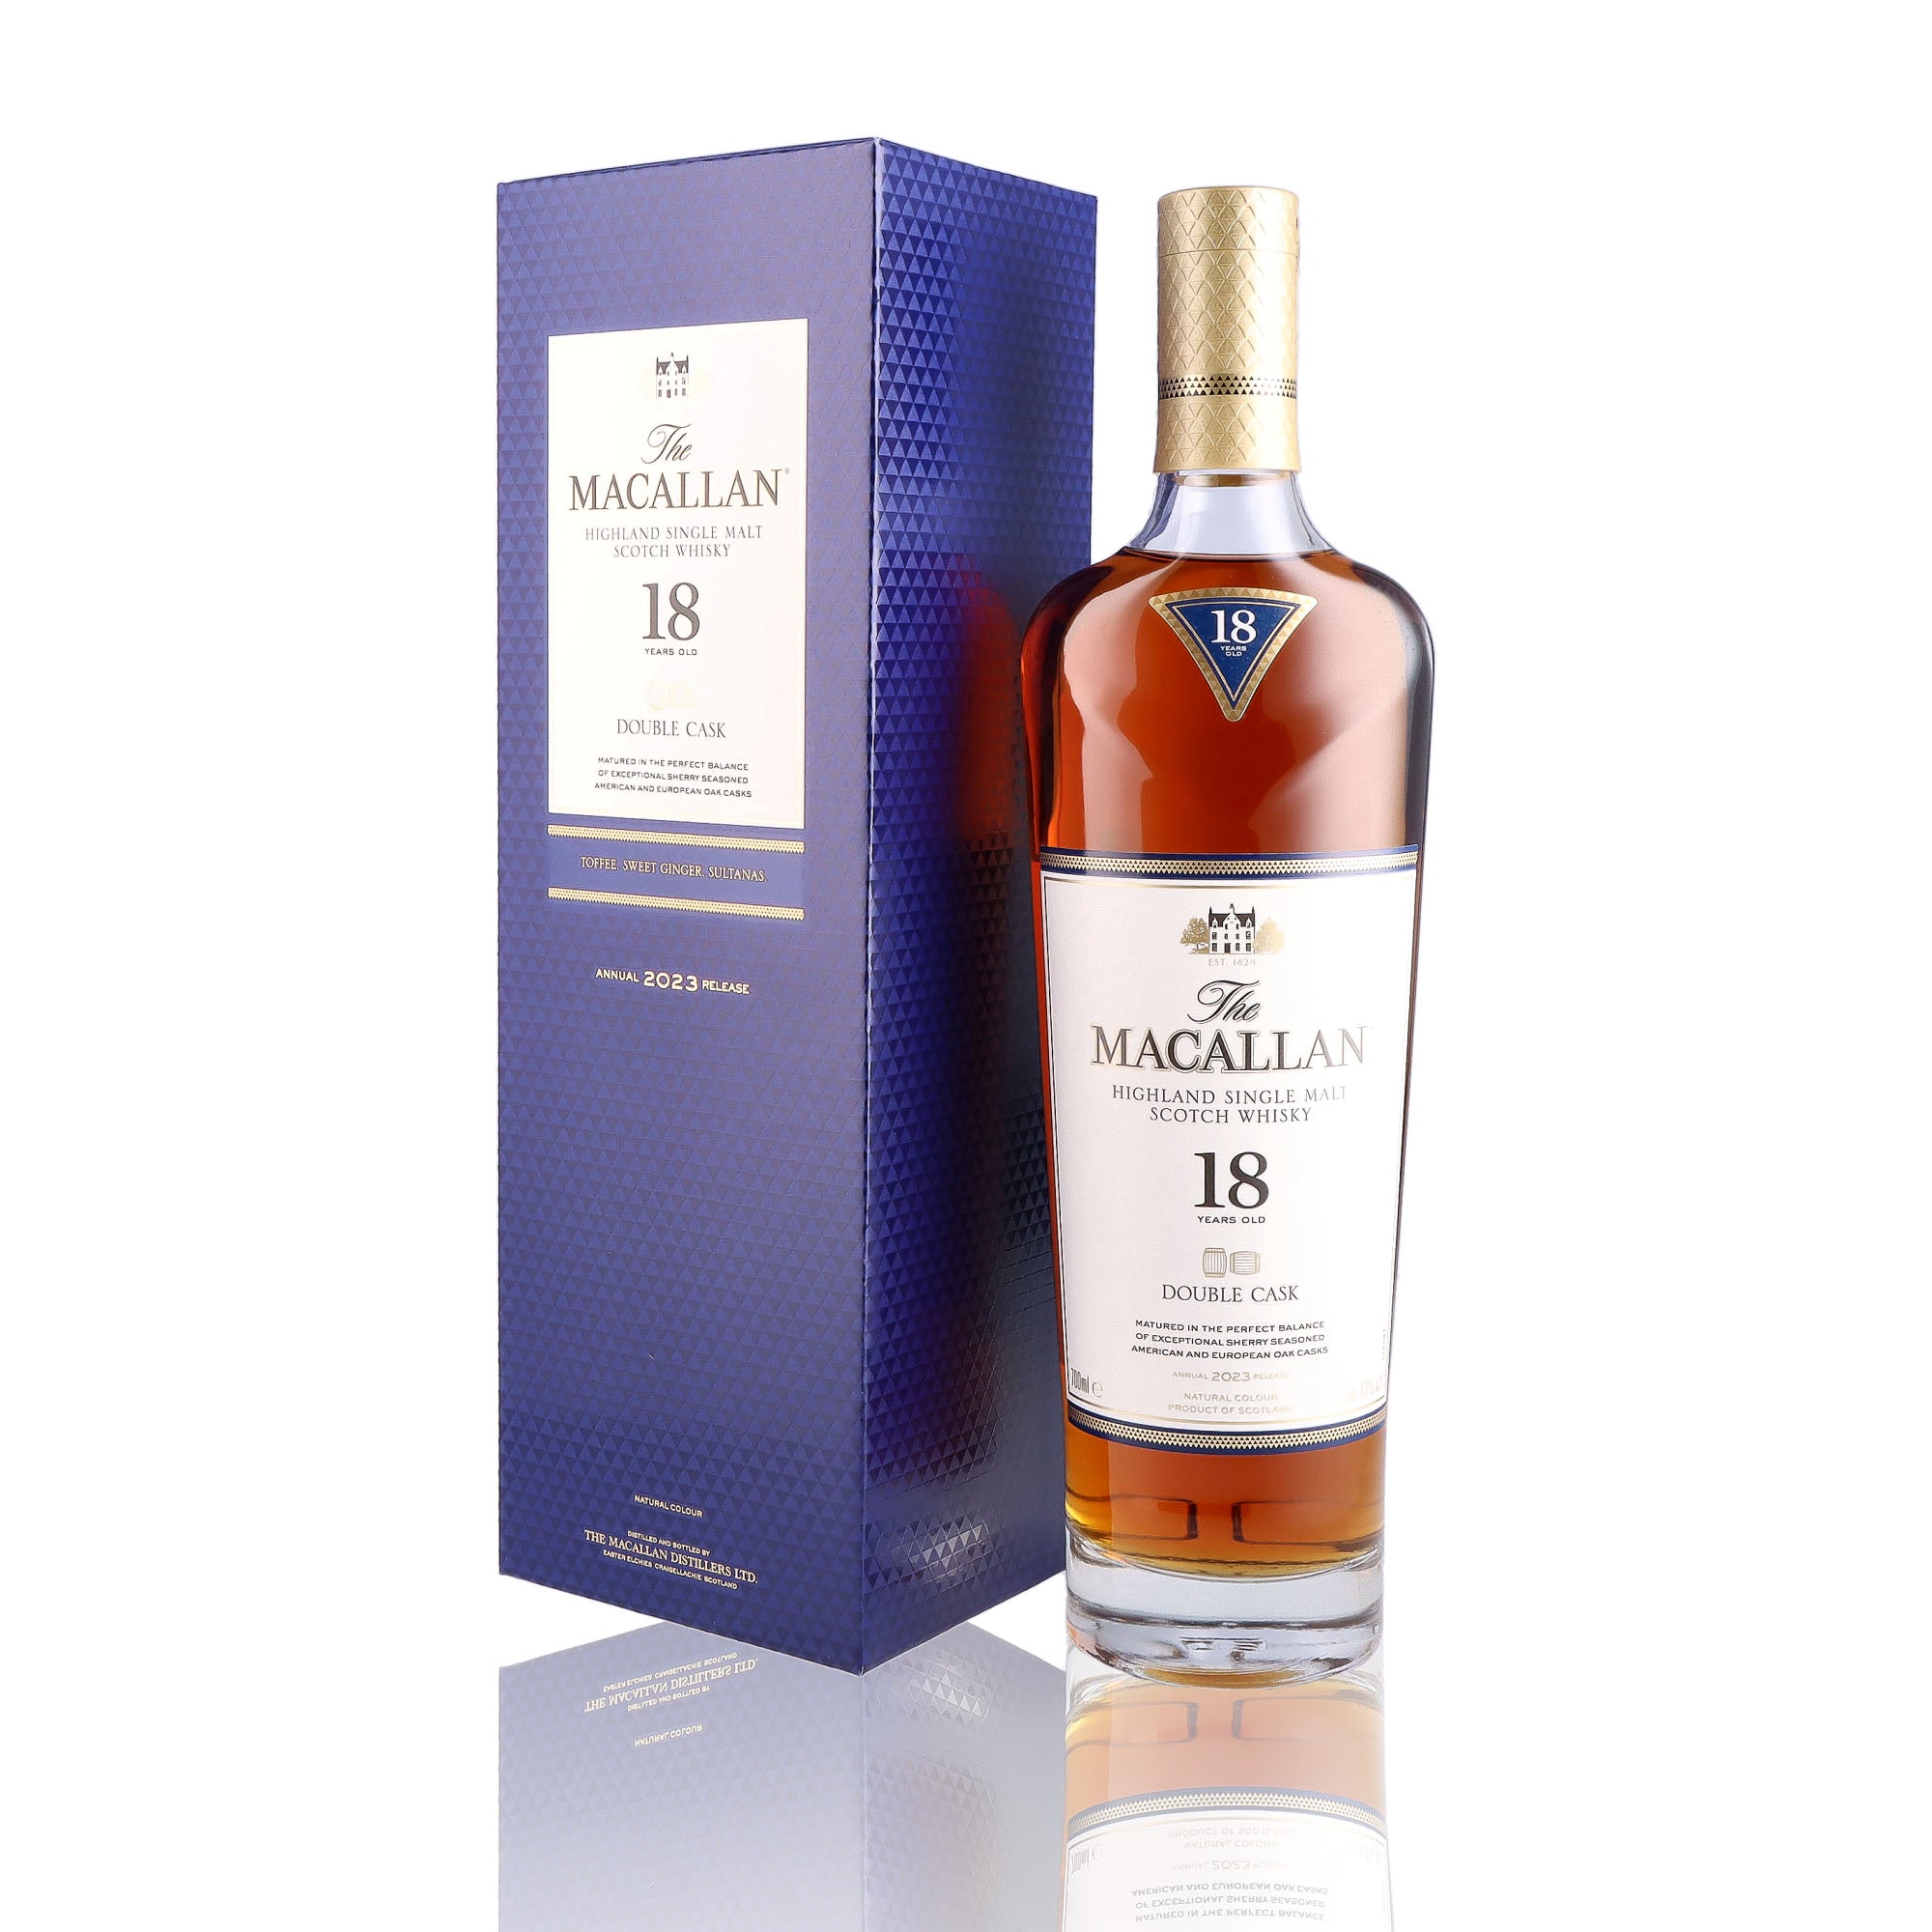 Une bouteille de Scotch Whisky Single Malt de la marque Macallan, nommée Double Cask, 18 ans d'âge.